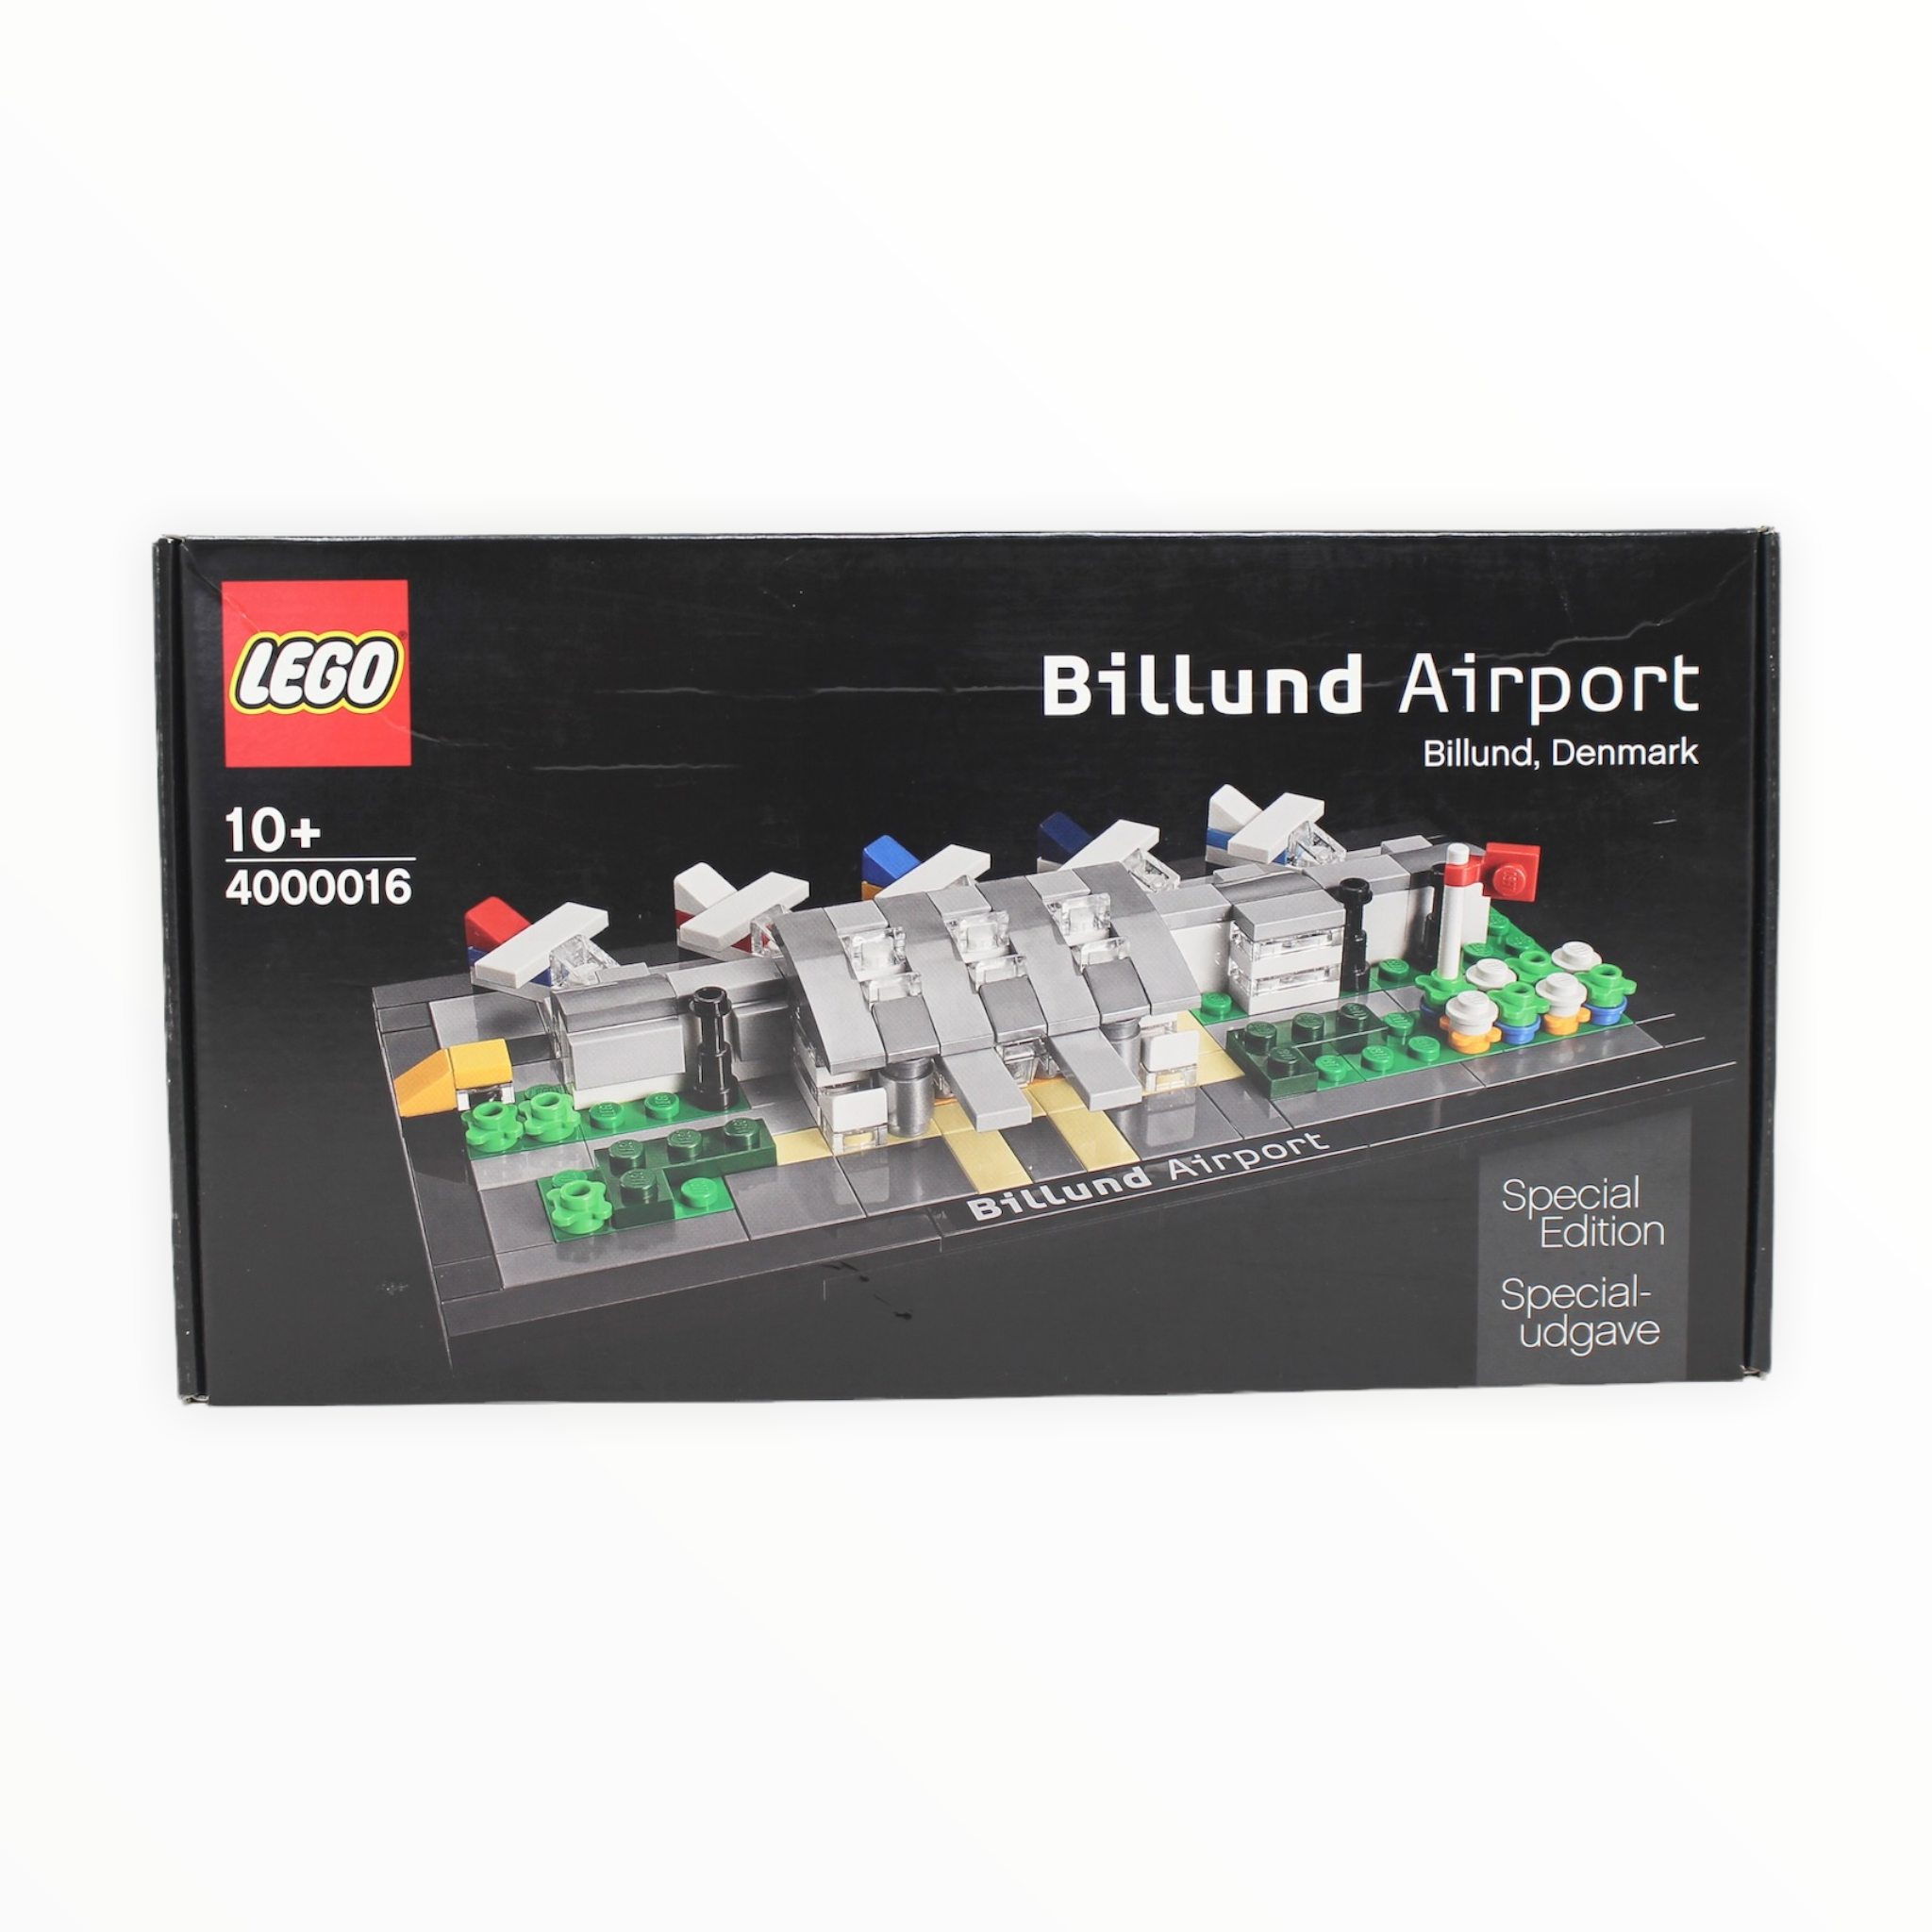 Retired Set 4000016 LEGO Billund Airport